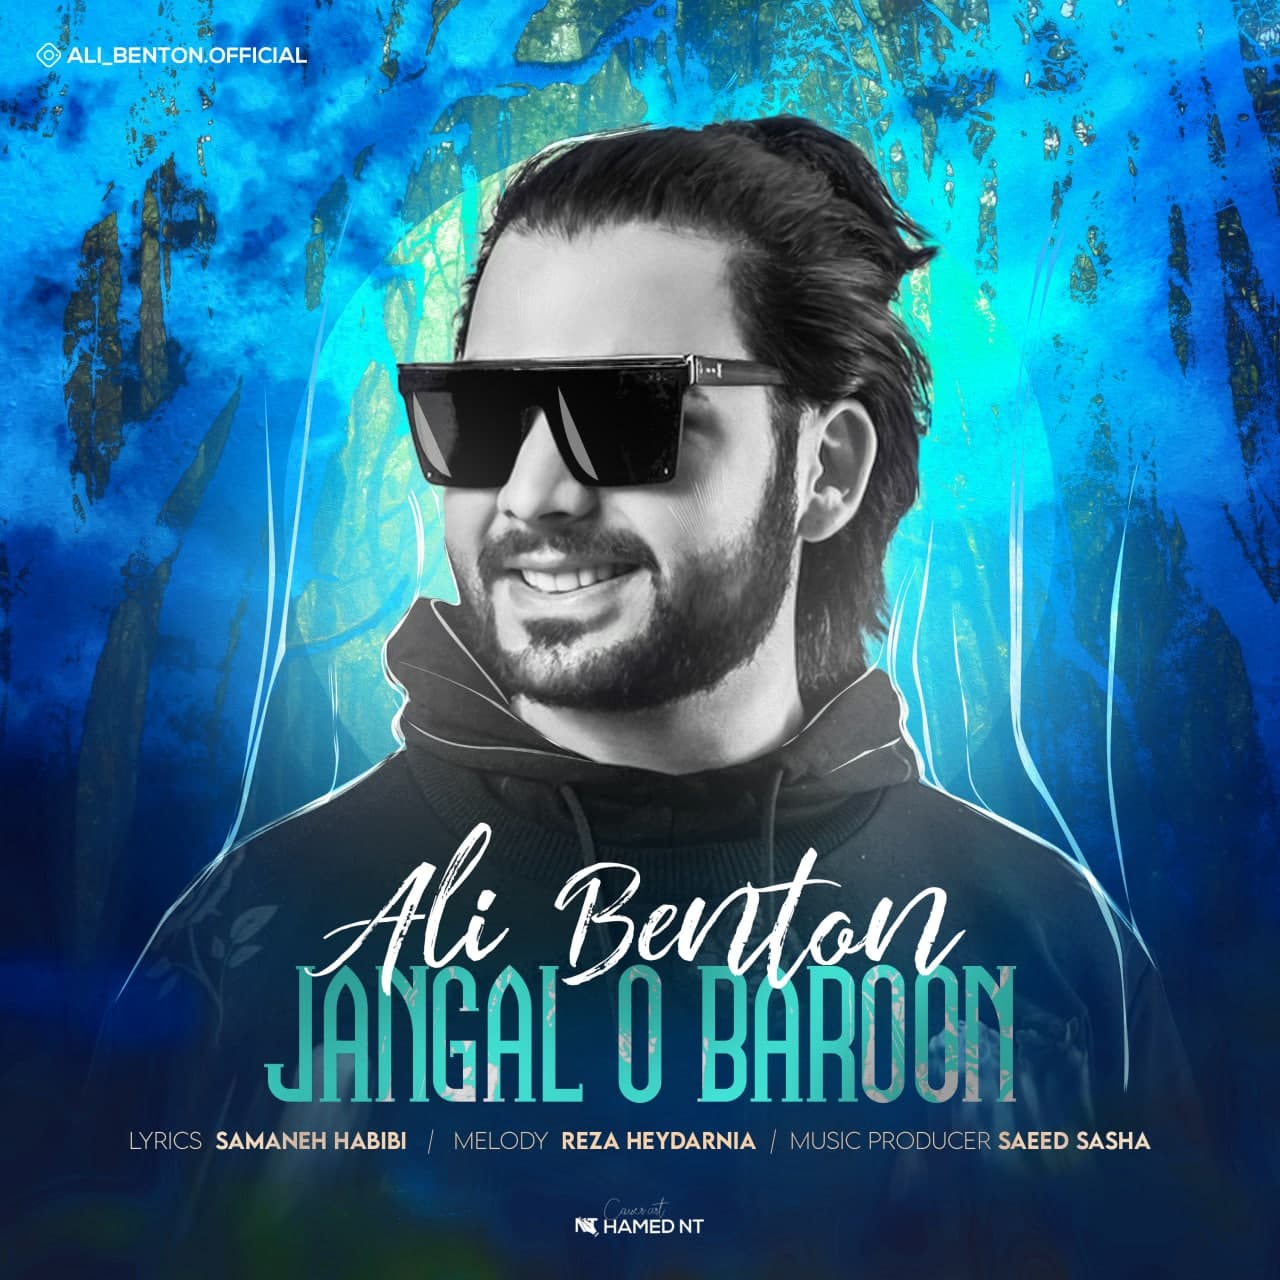  دانلود آهنگ جدید علی بنتون - جنگل و بارون | Download New Music By Ali Benton - Jangal O Baroon